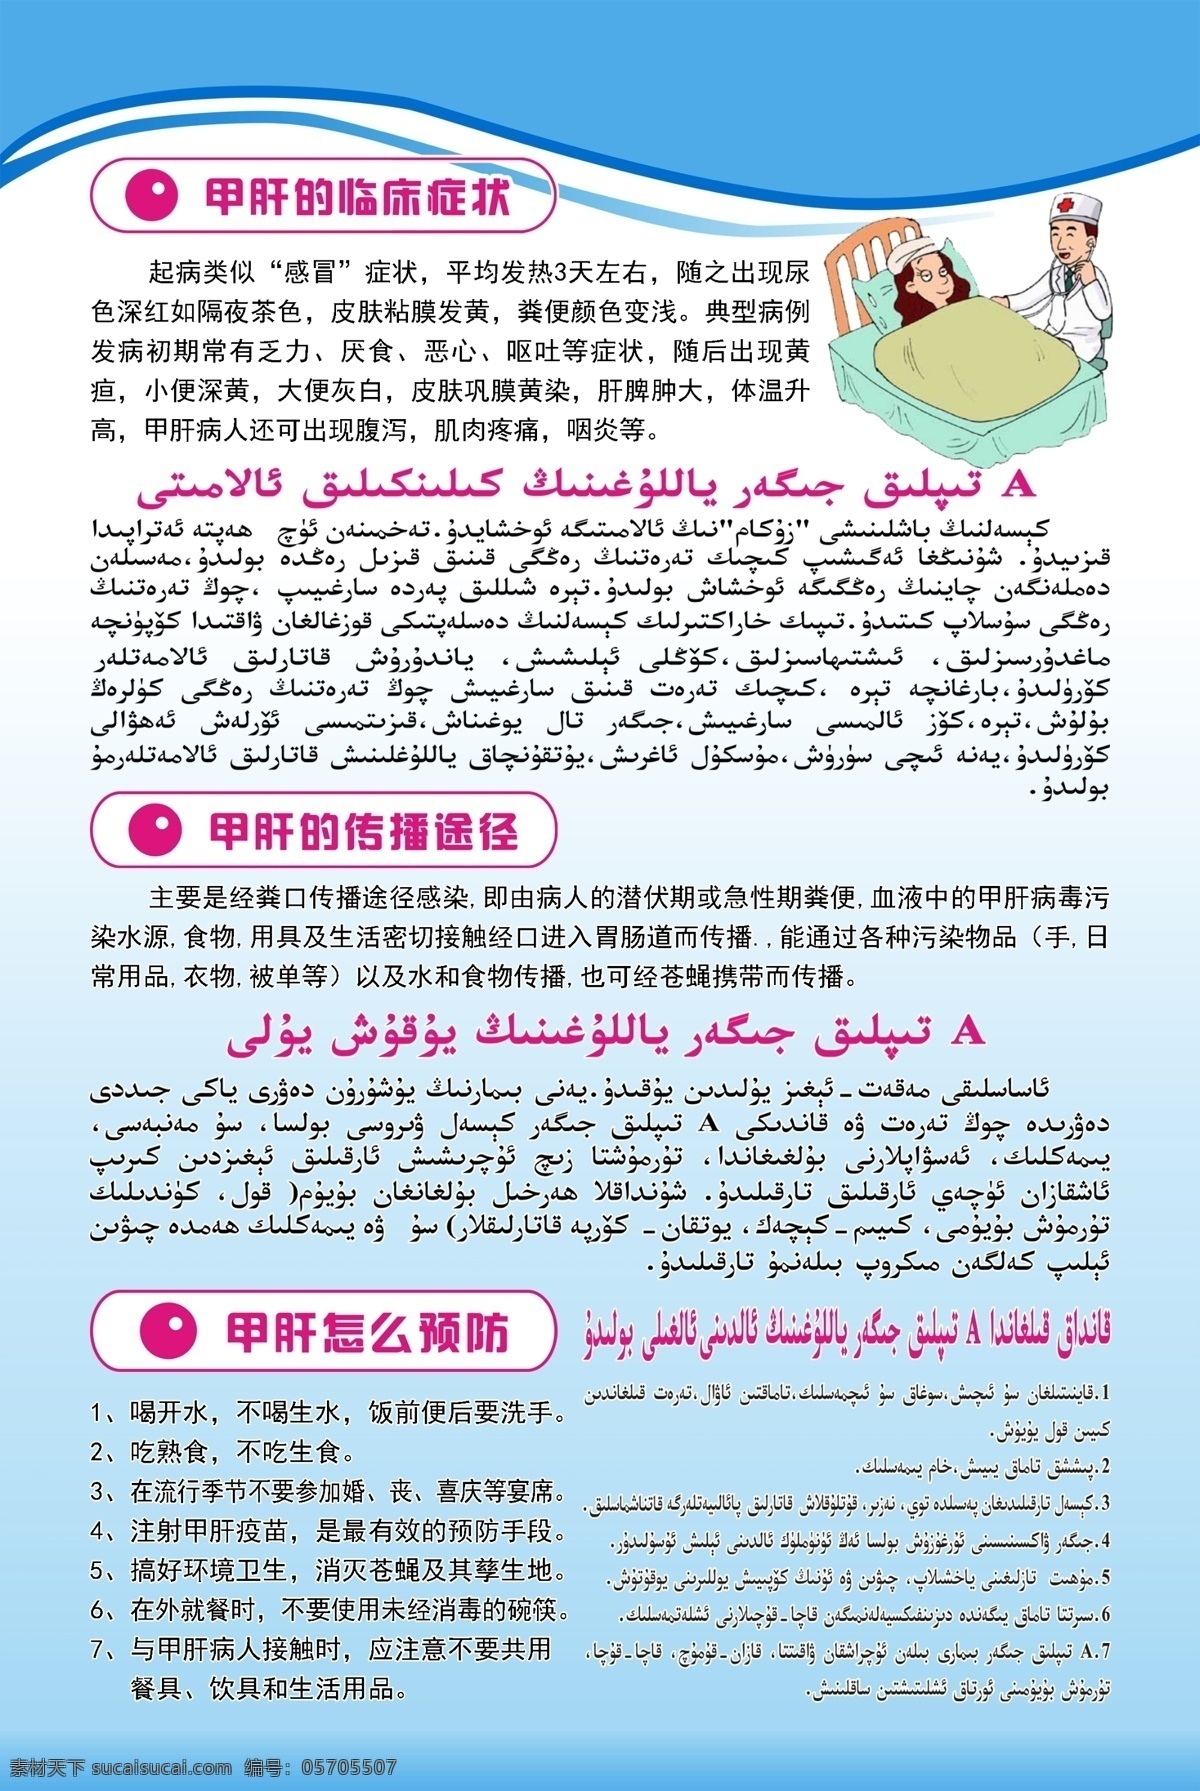 维汉双语 甲肝 临床症状 健康教育 医院展板 展板模板 传播途径 甲肝预防 海报 其他展板设计